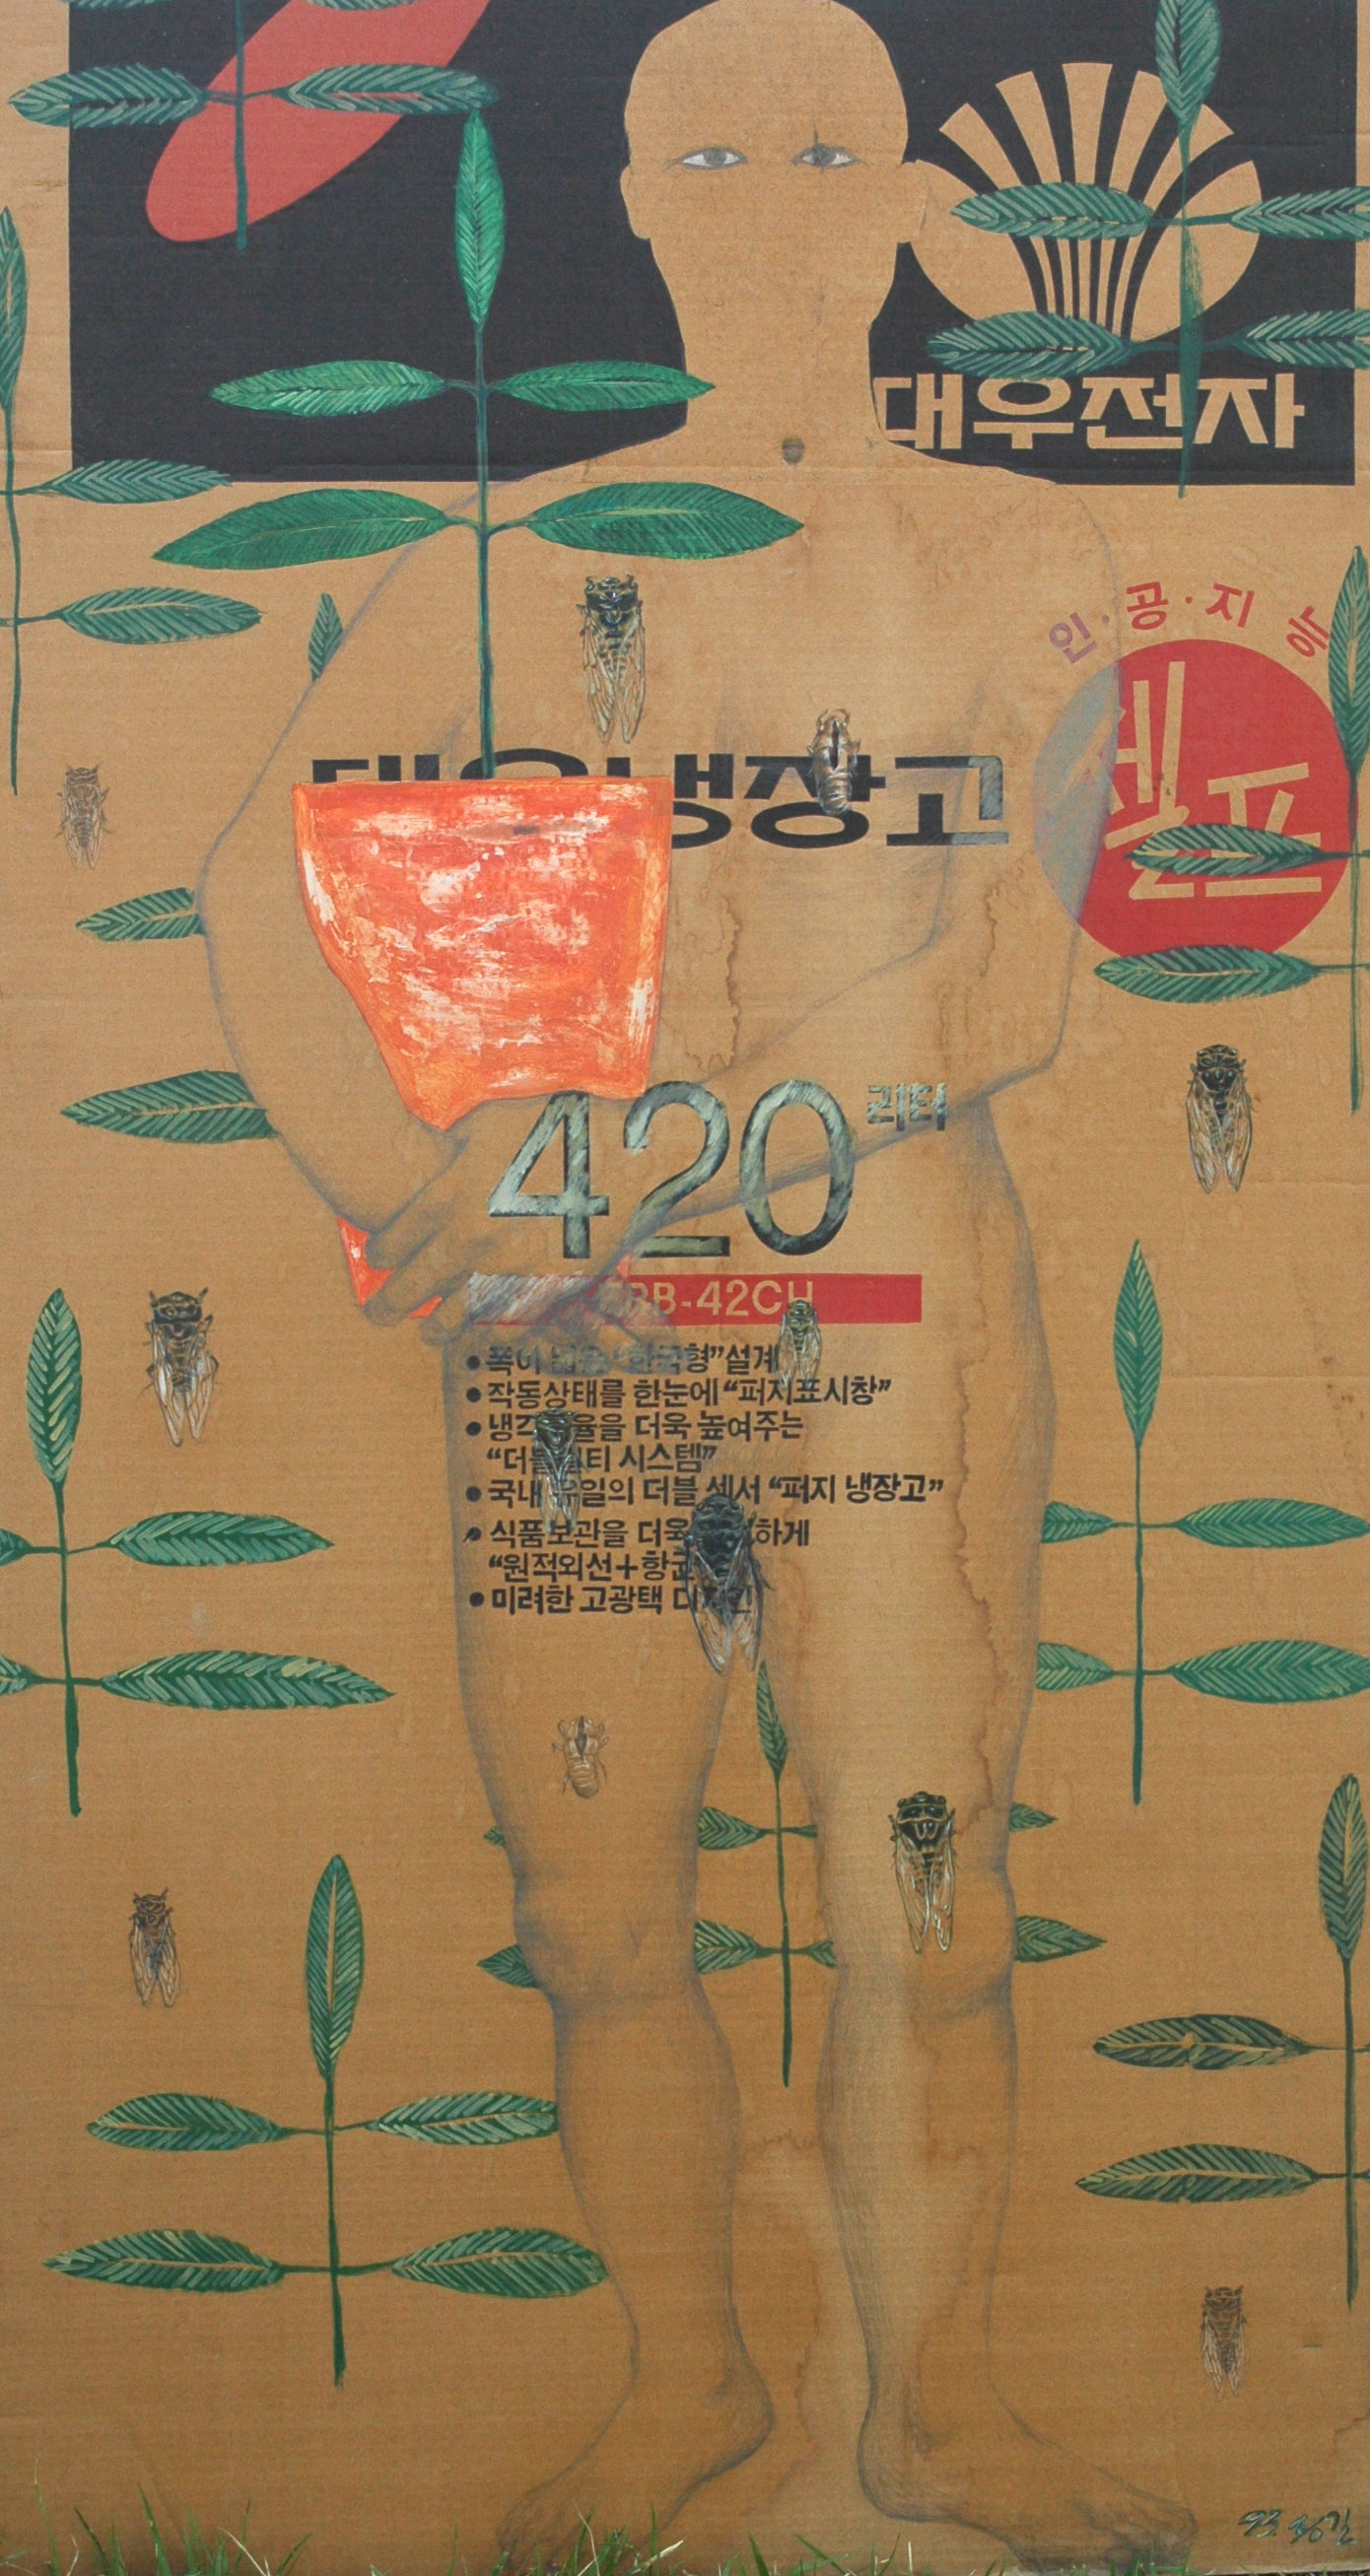  임종길, 〈자화상〉, 1993, 골판지에 혼합재료, 137x71cm